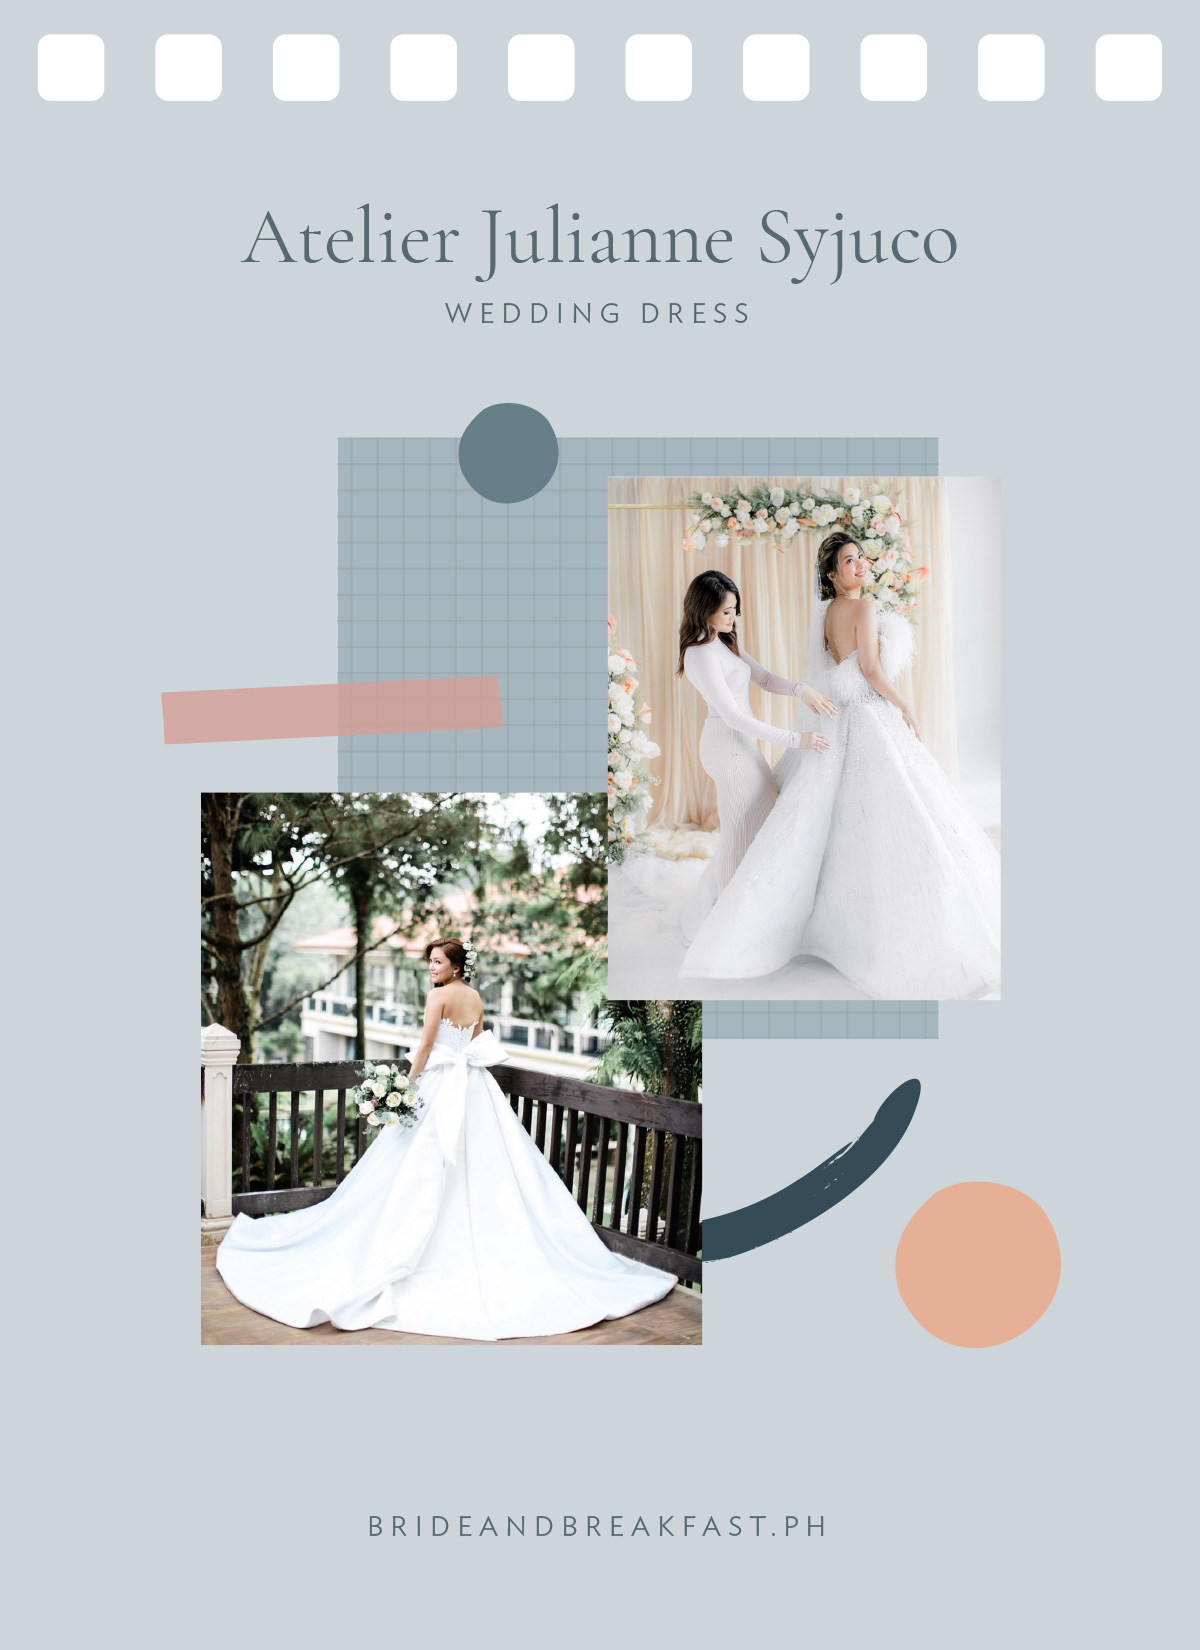 Atelier Julianne Syjuco (Bridal Dress)